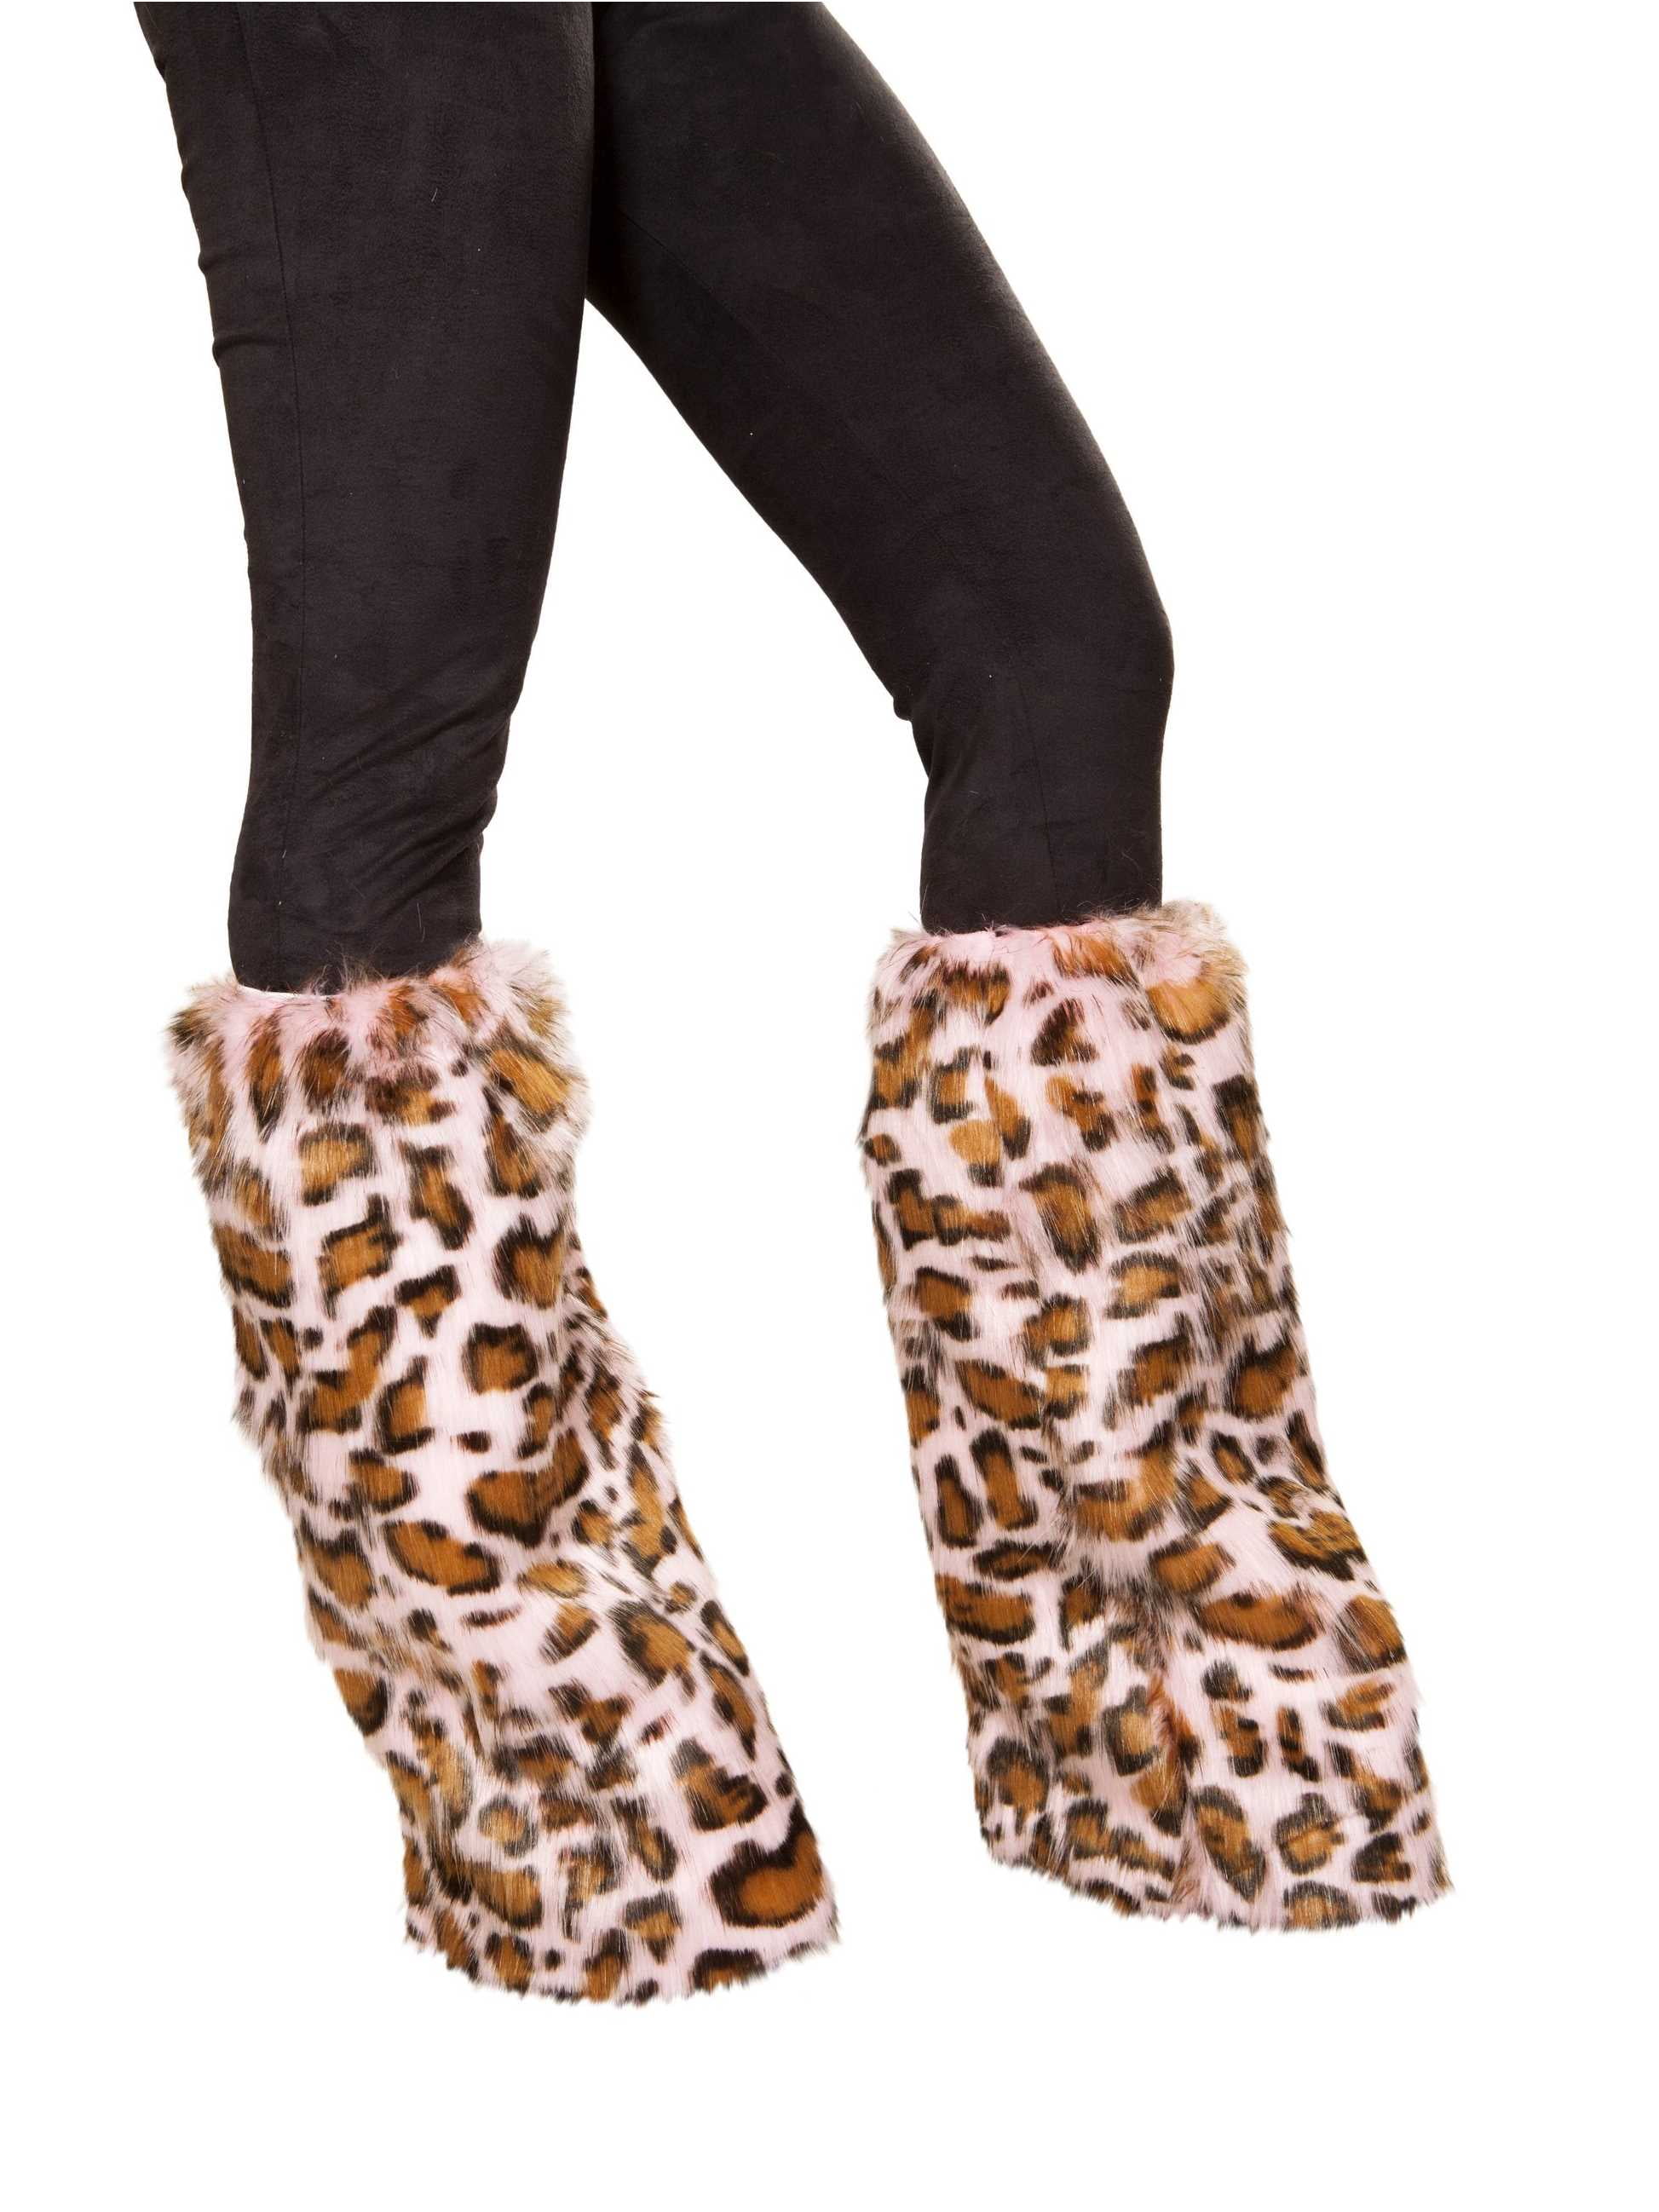 Standard;One Size Leopard Leg Warmer